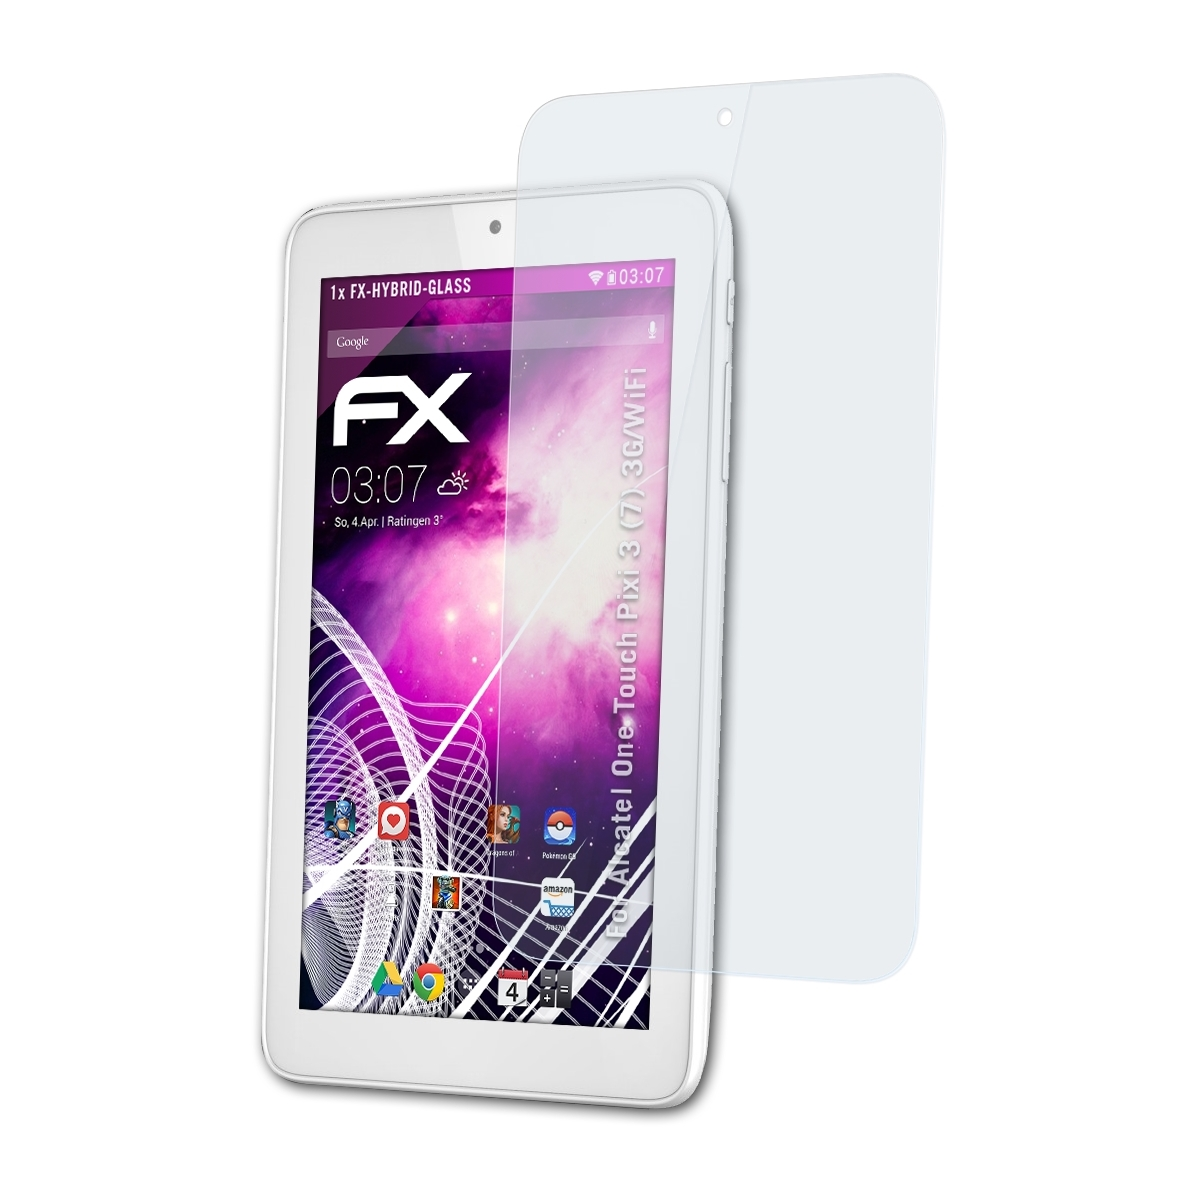 ATFOLIX (7) FX-Hybrid-Glass Schutzglas(für Pixi One Touch Alcatel (3G/WiFi)) 3